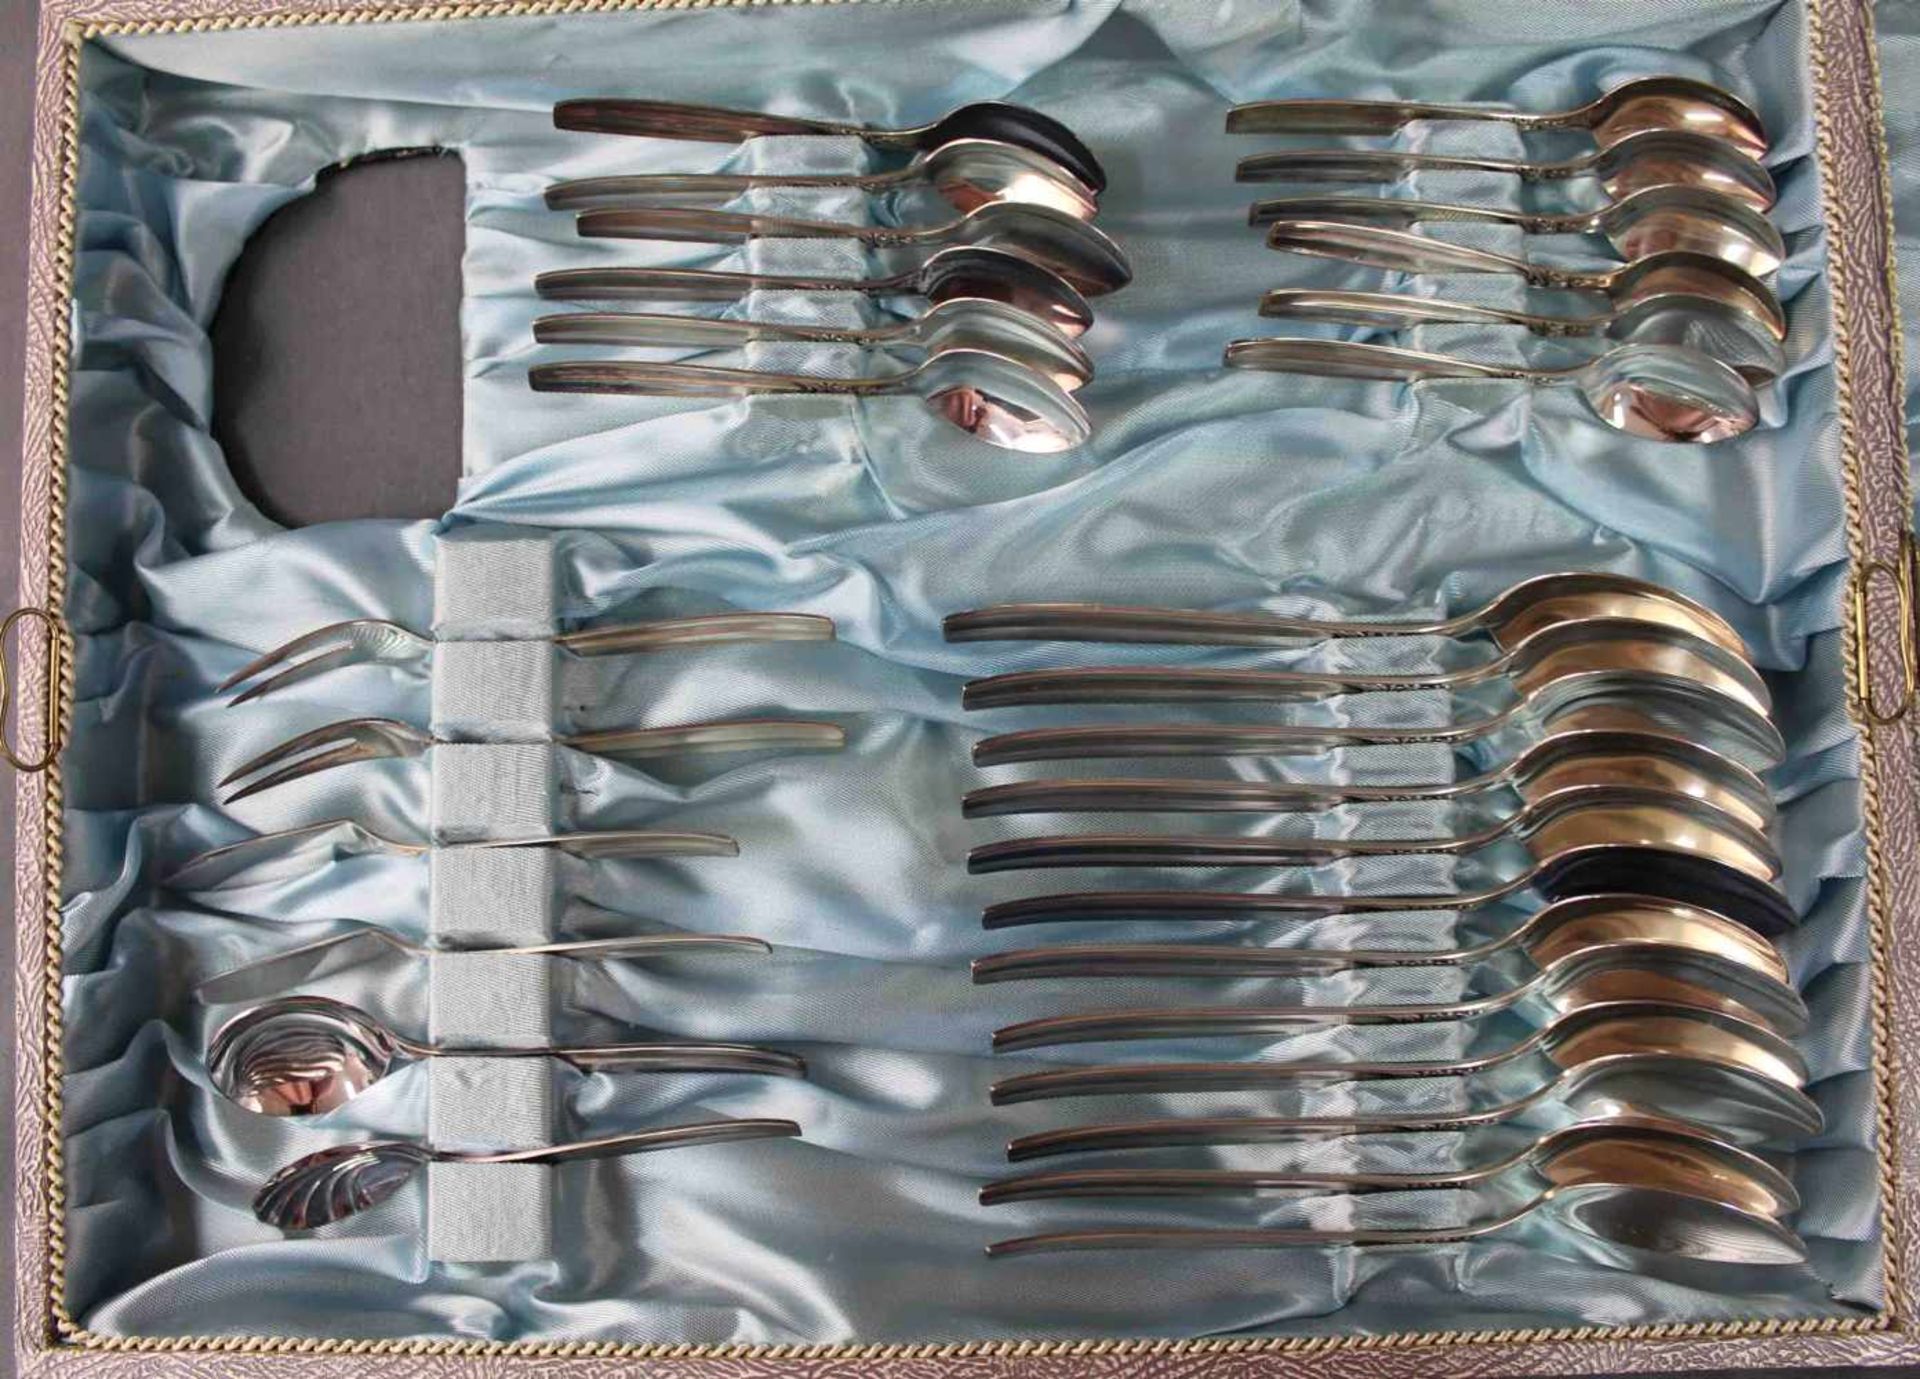 Silberbesteck für 12 Personen in passendem Koffer. Ebel Solingen.2731 Gramm ohne Messer. 75 Teile - Image 6 of 12